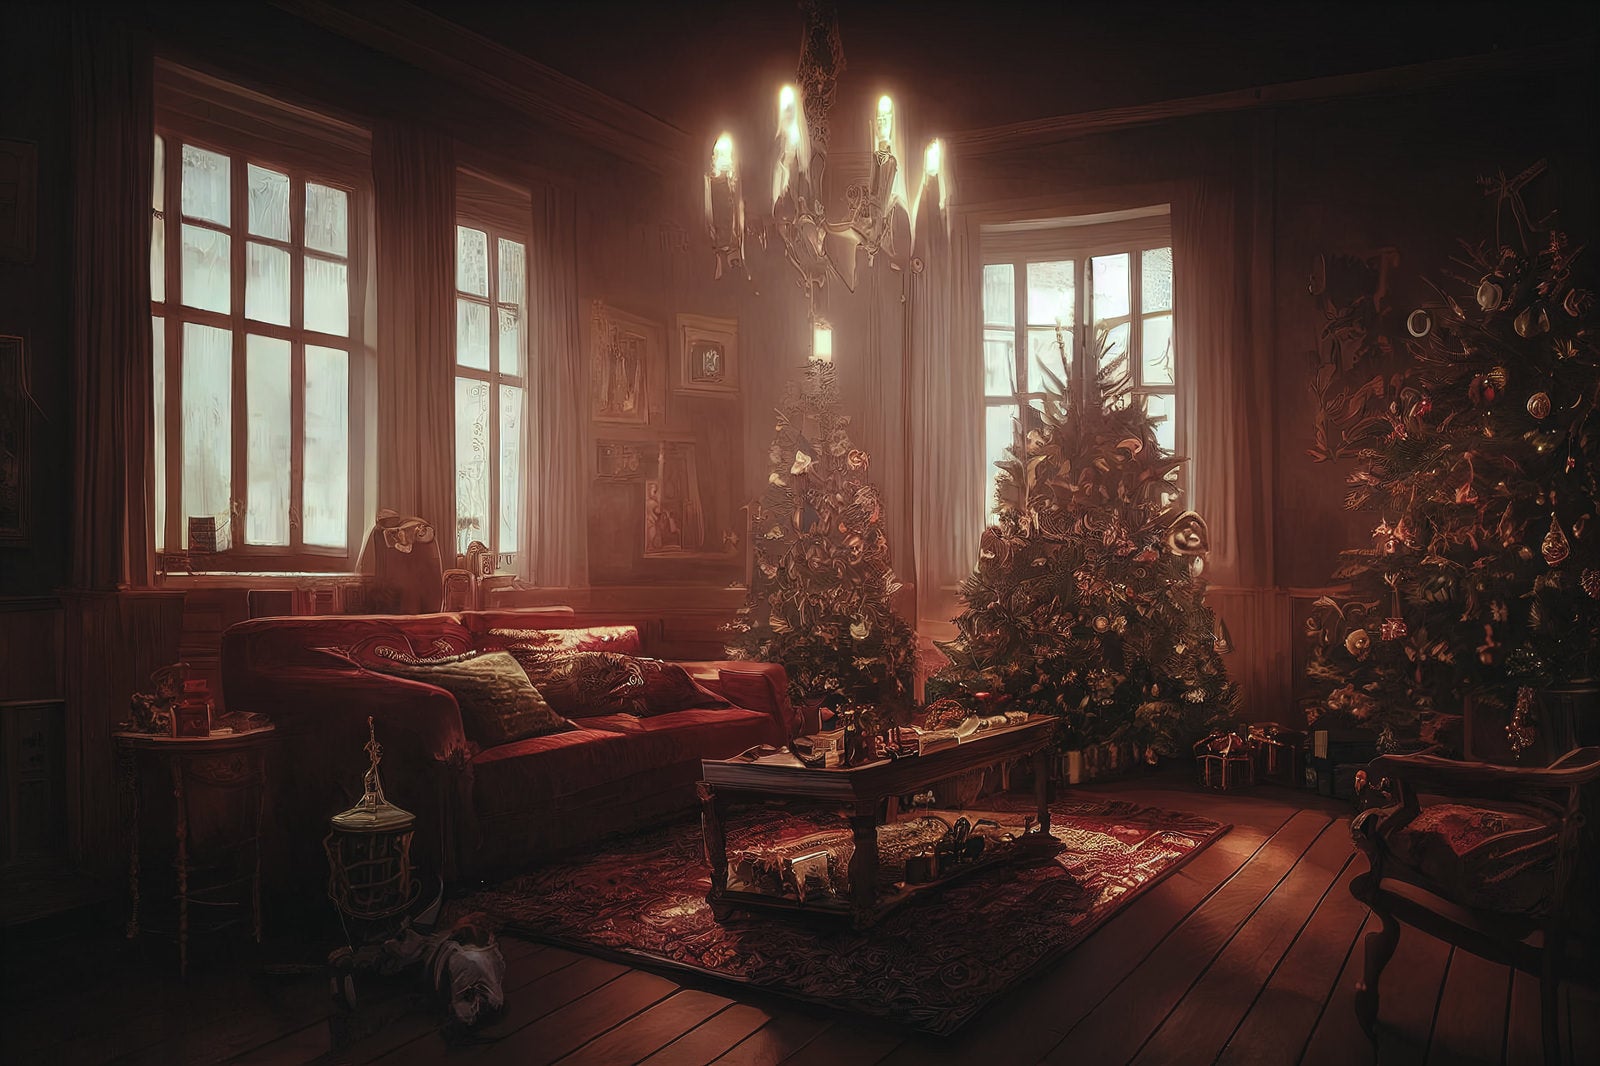 「クリスマスツリーとプレゼントが置かれたリビングの様子」の写真